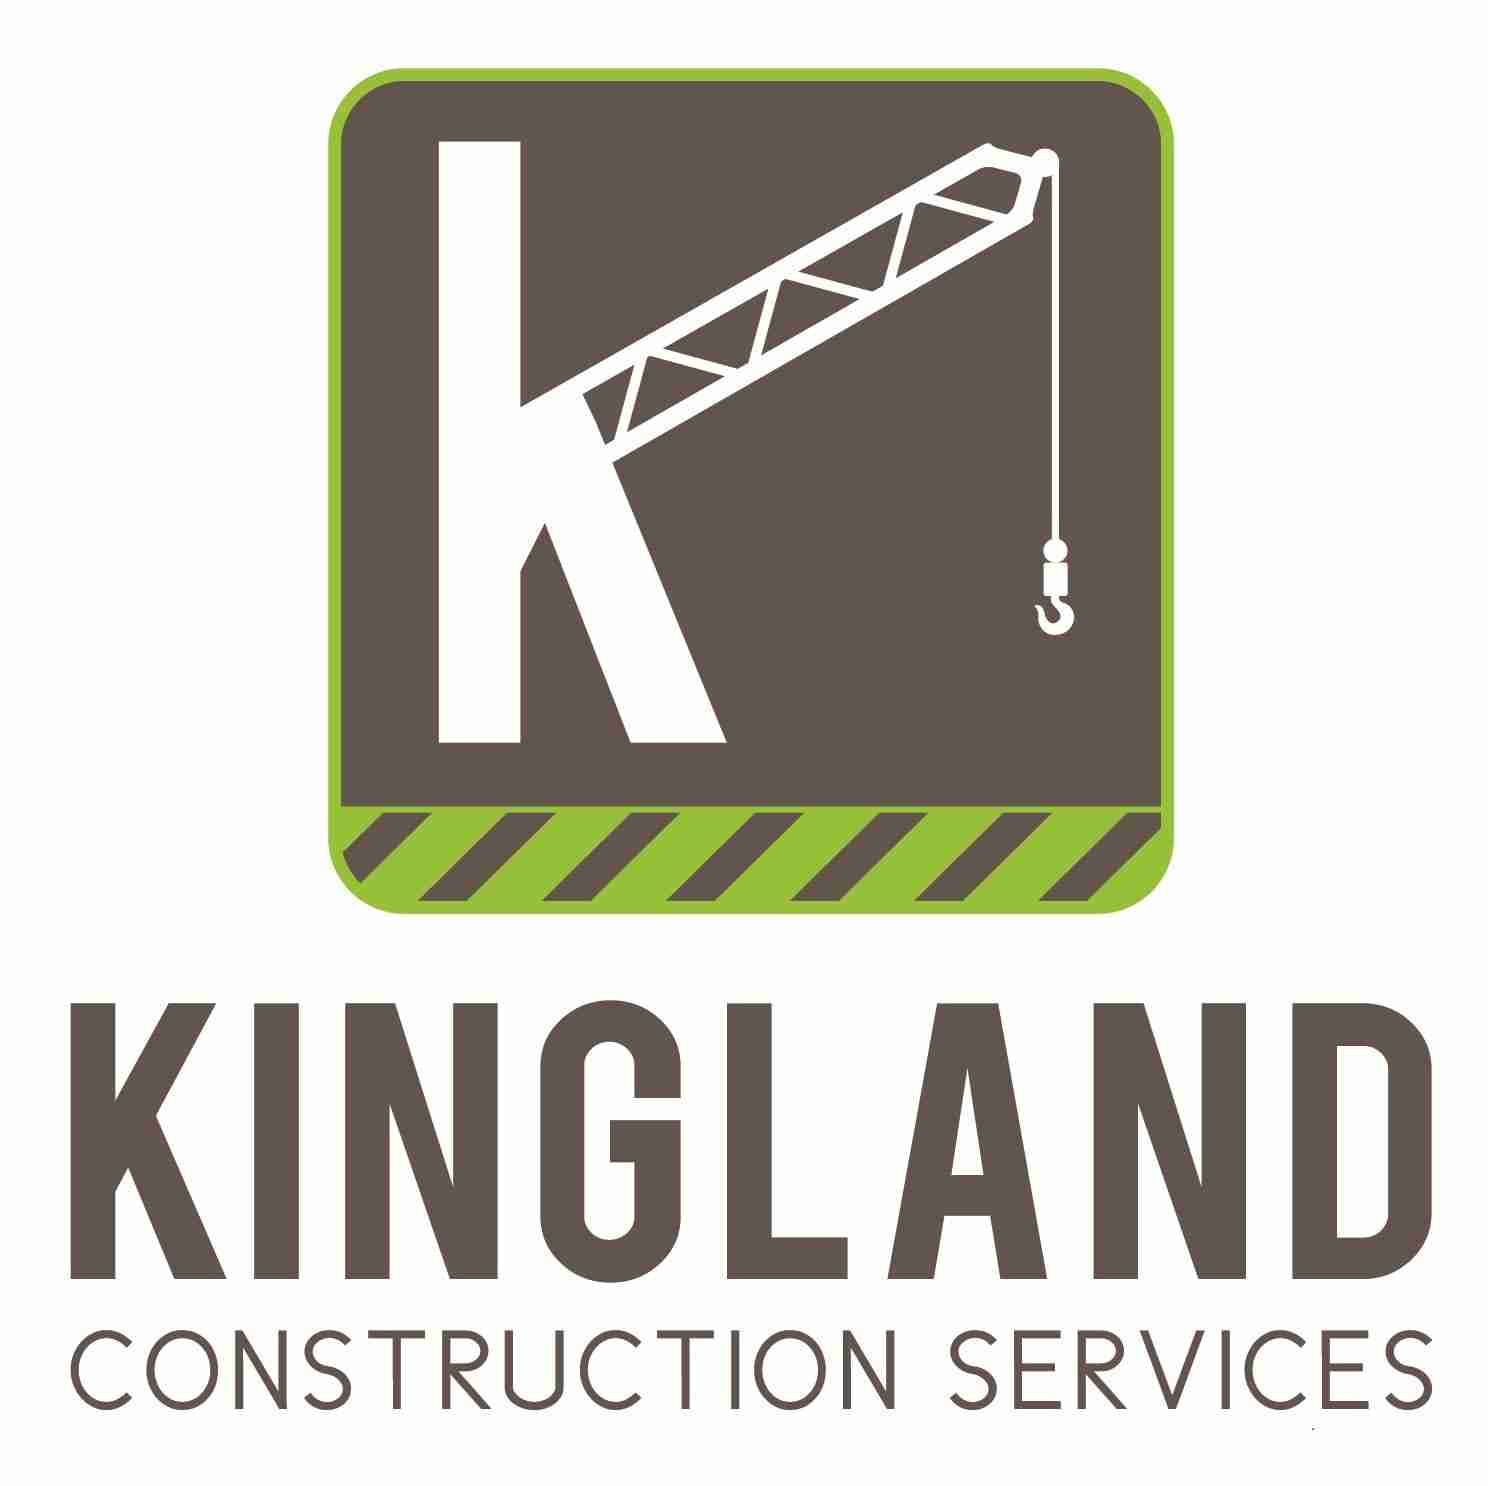 Kingland Construction